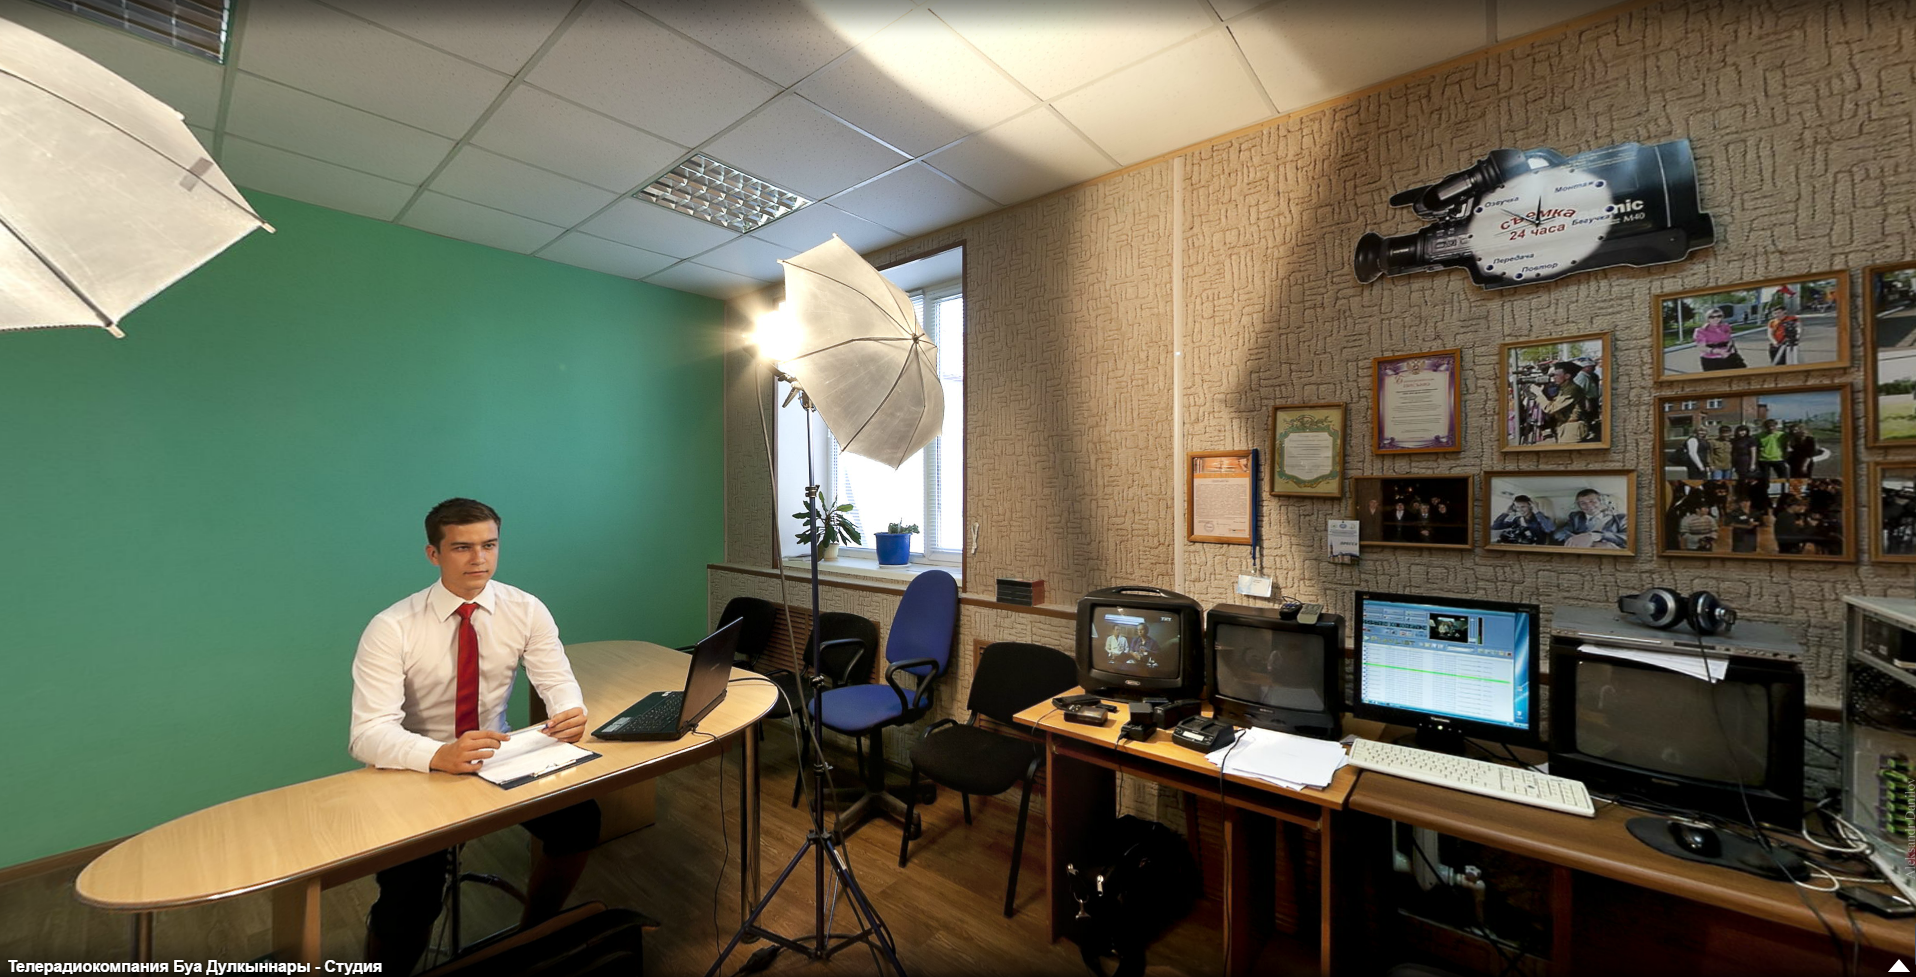 Телерадиокомпания Буа Дулкыннары  - виртуальный 3Д тур по студии телерадиокомпании